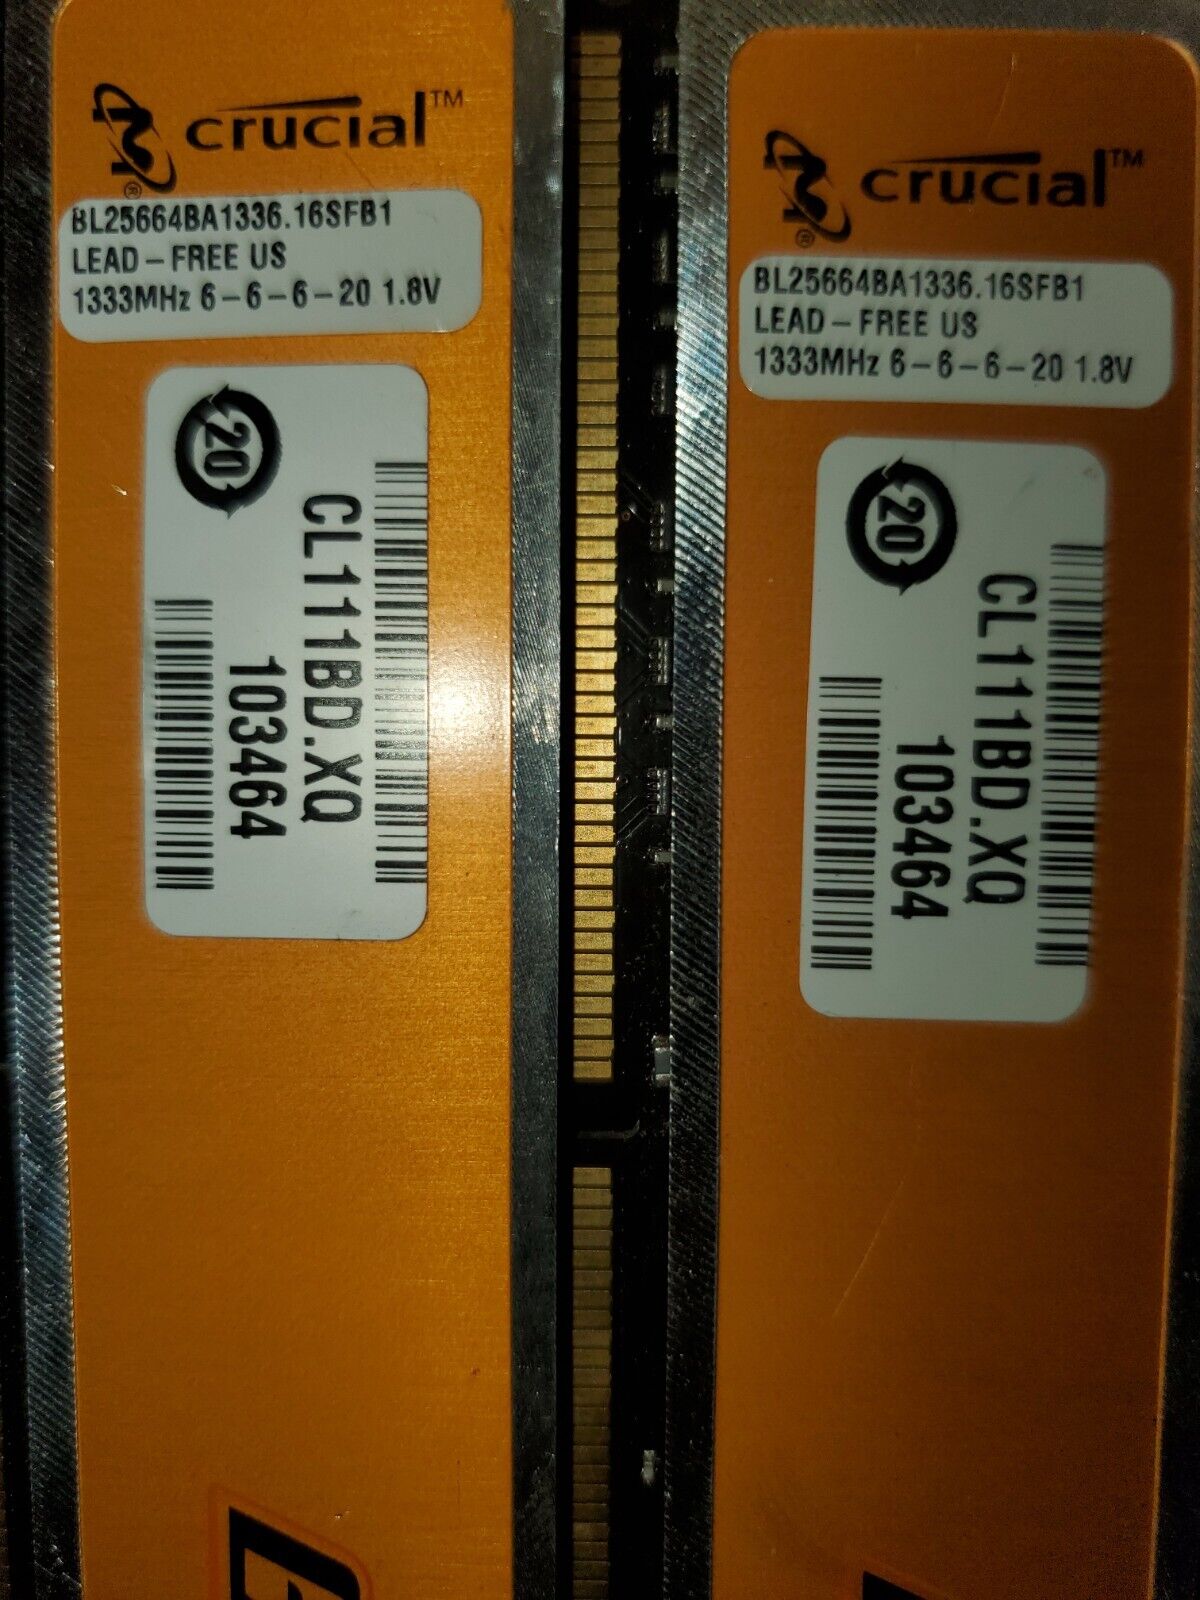 Crucial Ballistix 2x2GB DDR3 1333MHz Ram (4GB Total)